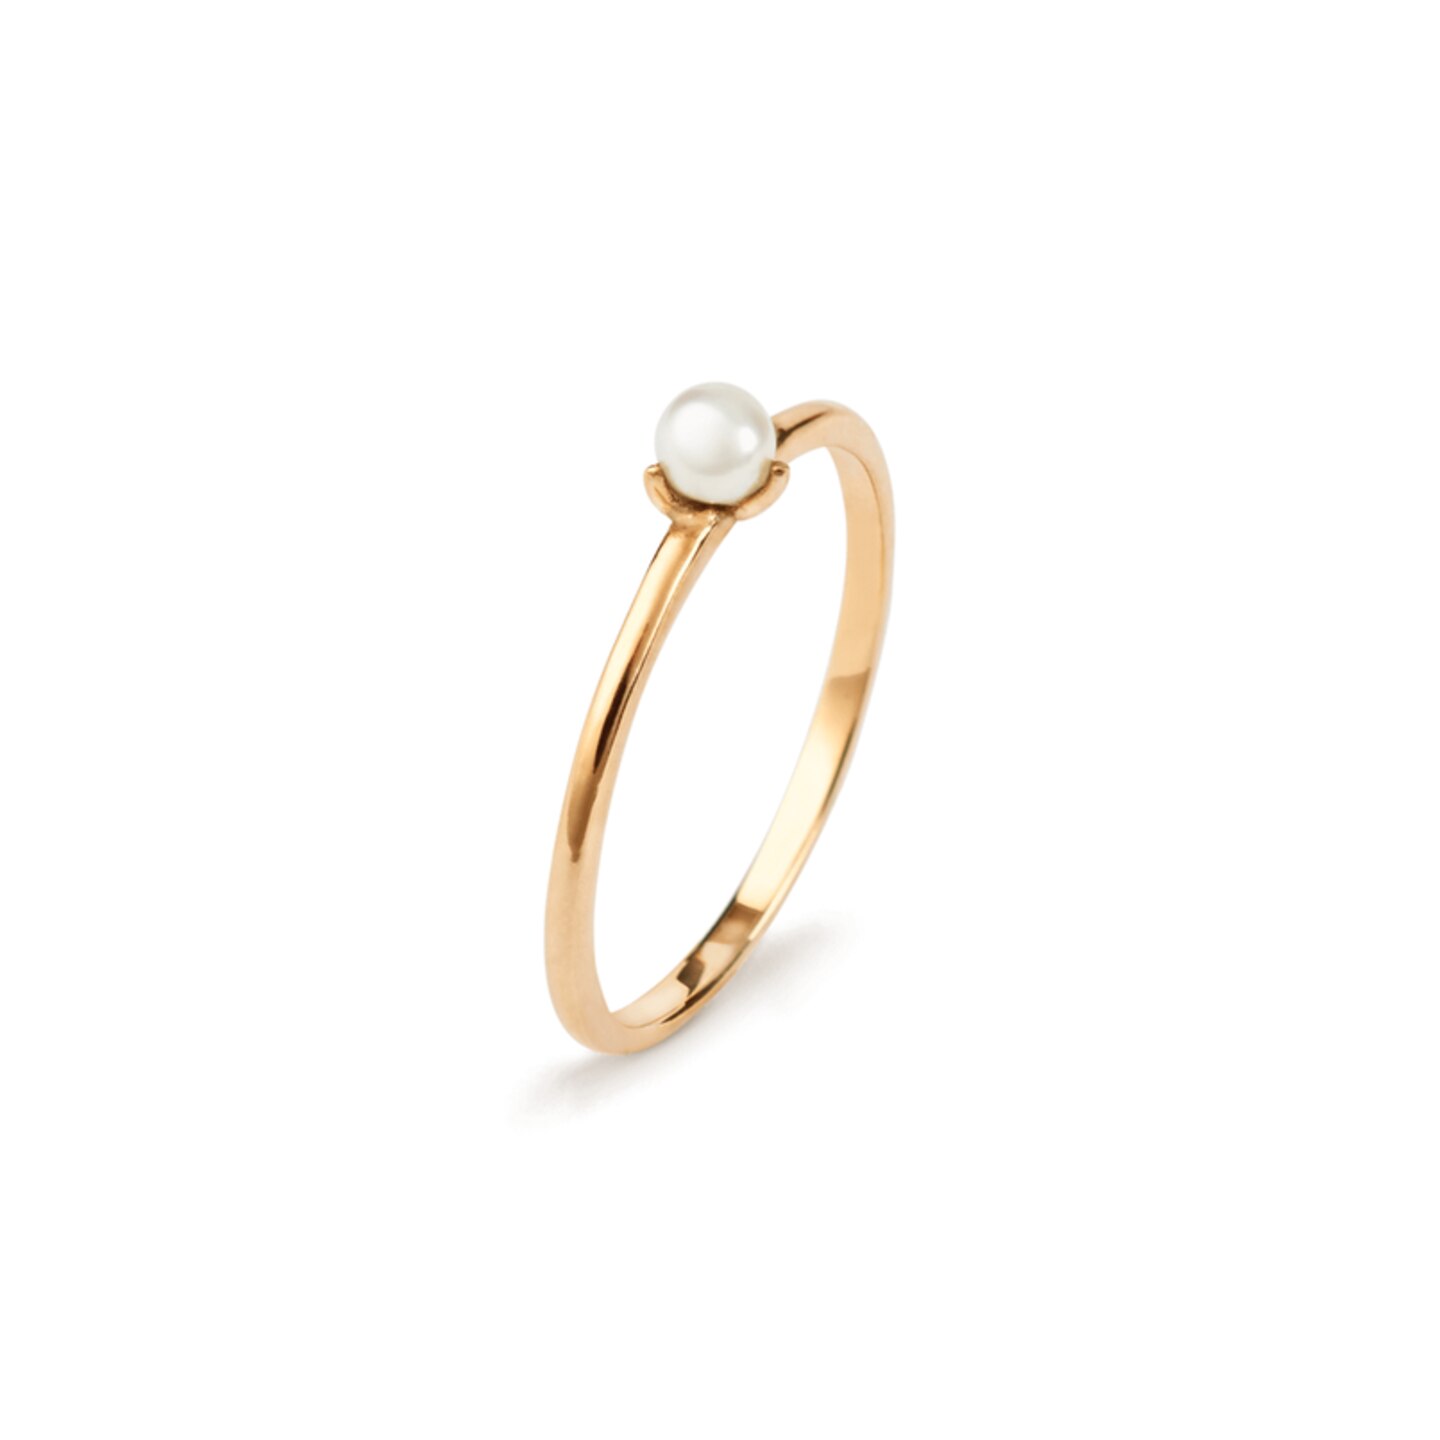 Zierlich aber luxuriös: Mit diesem Ring verewigst du dich an den Fingern deiner Mutter. Ein perfektes Geschenk für alle Mamas, die zurückhaltenden Goldschmuck lieben. Der Perlenring von Akind kostet etwa 225 Euro. 